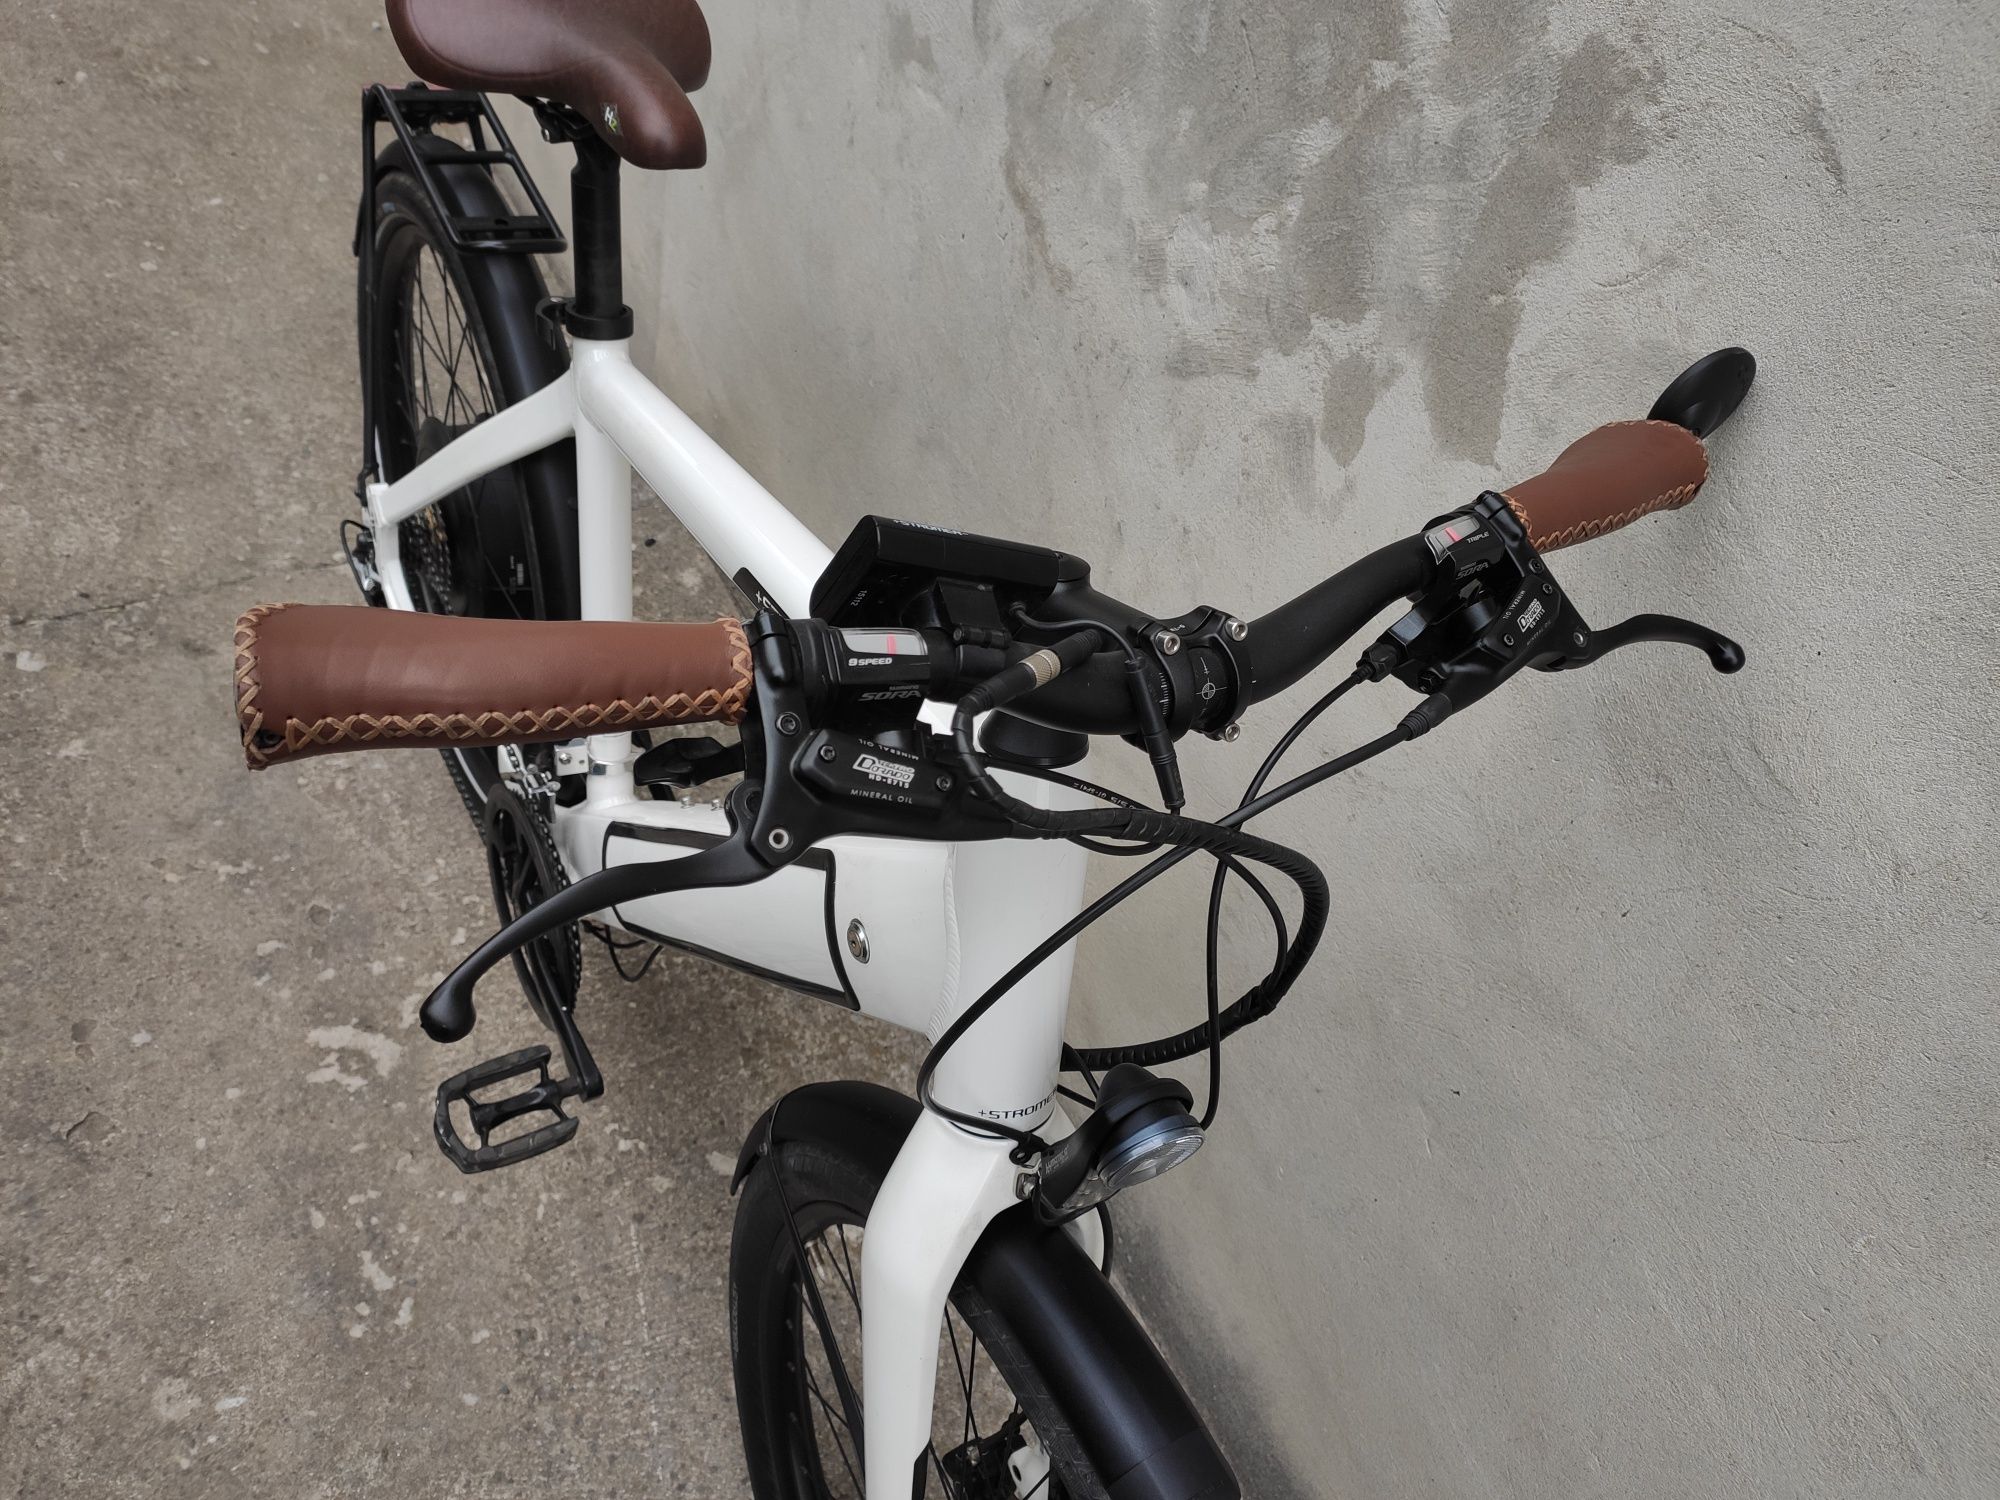 e-bike + Stromer - ST1 , M size, XT, 500W, 45км/год, рекуперація

Ми